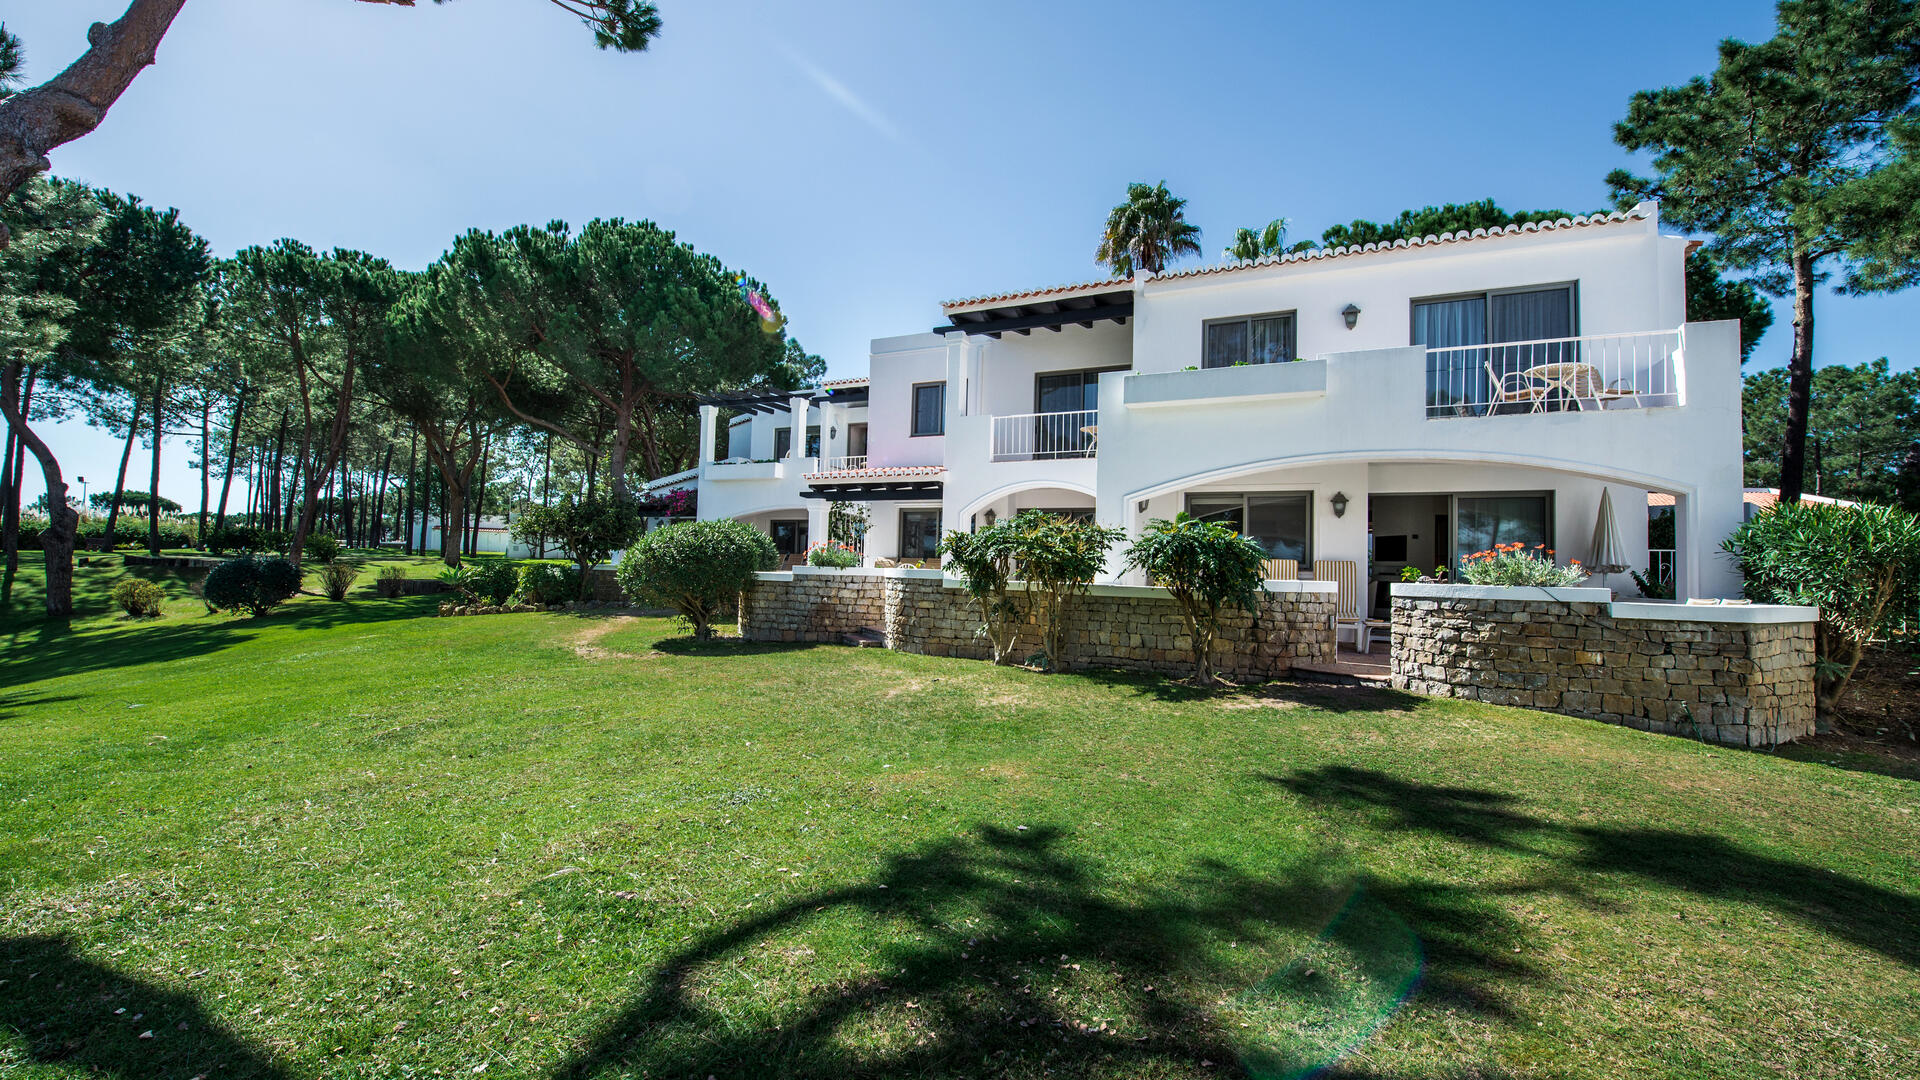 Four Seasons Country Club, Algarve Portugal